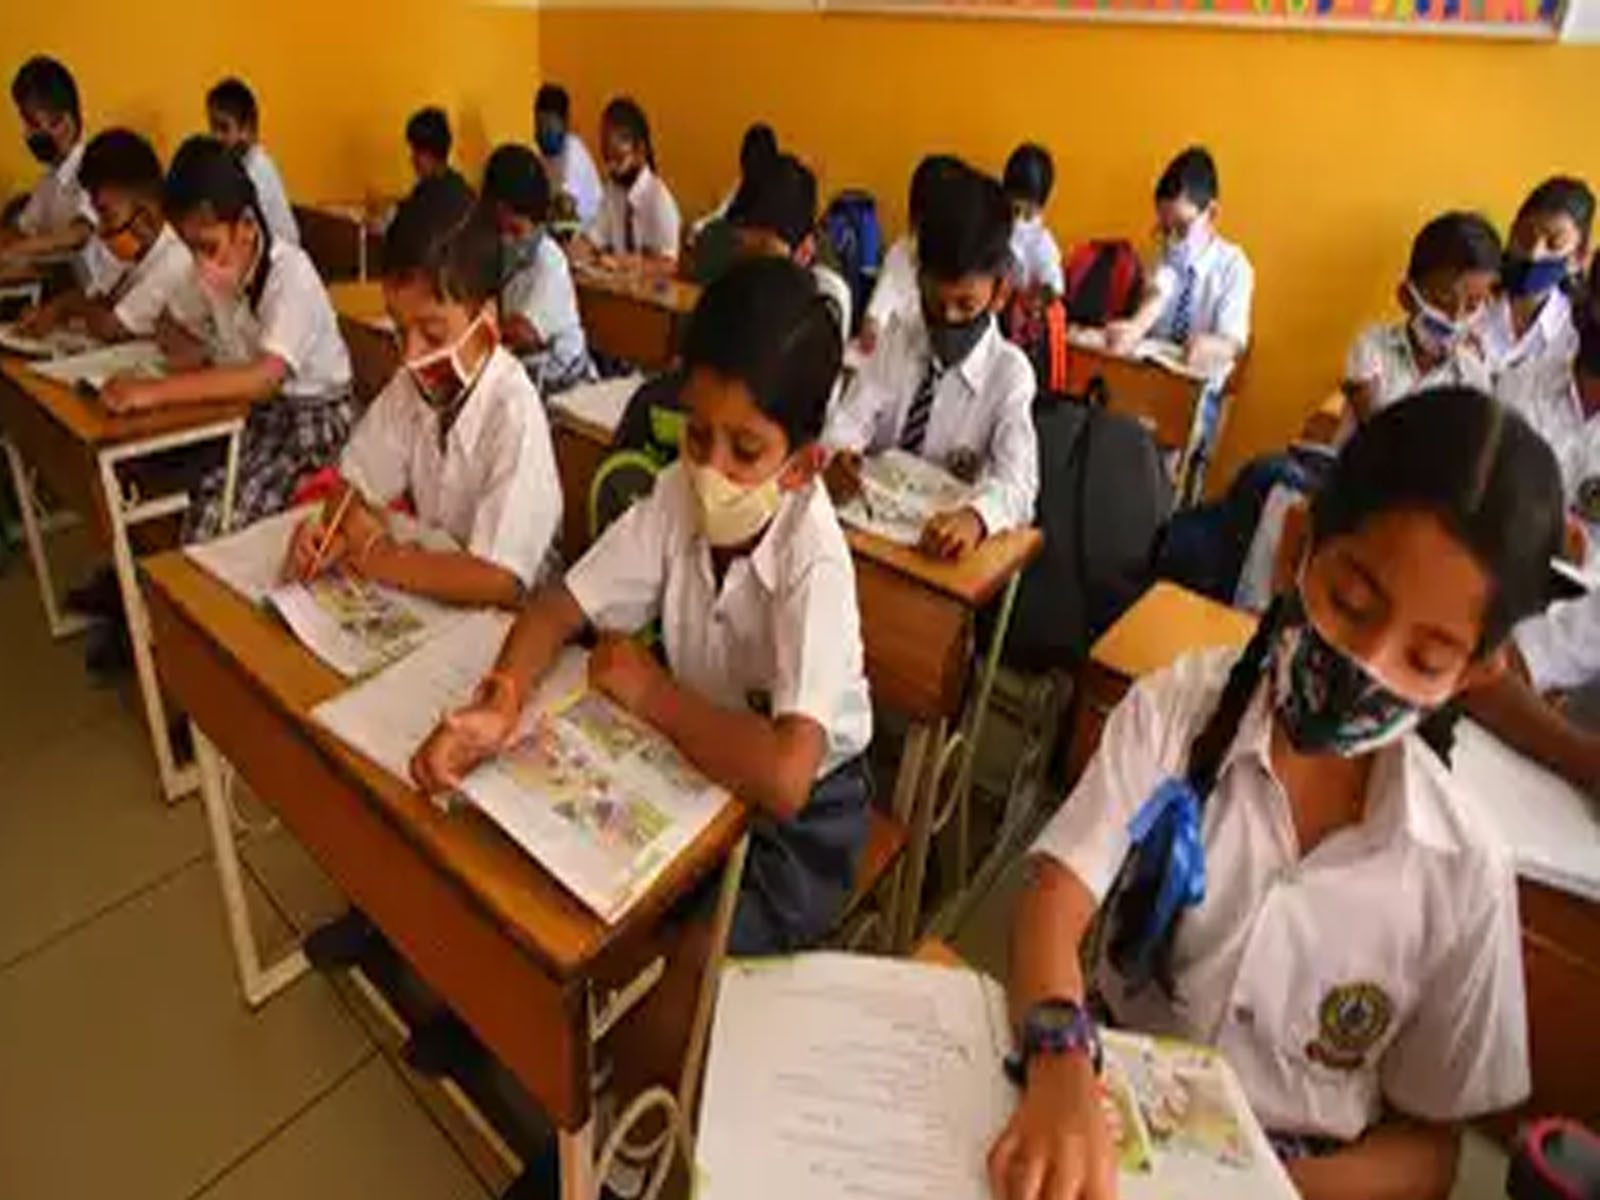 ਭਾਰਤ ‘ਚ ਲਗਾਤਾਰ ਵਧ ਰਹੀ ਹੈ ਪ੍ਰਾਈਵੇਟ ਸਕੂਲਾਂ ਦੀ ਗਿਣਤੀ, ਜਾਣੋ ਕਹਿੰਦੀ ਹੈ UNESCO ਦੀ ਰਿਪੋਰਟ